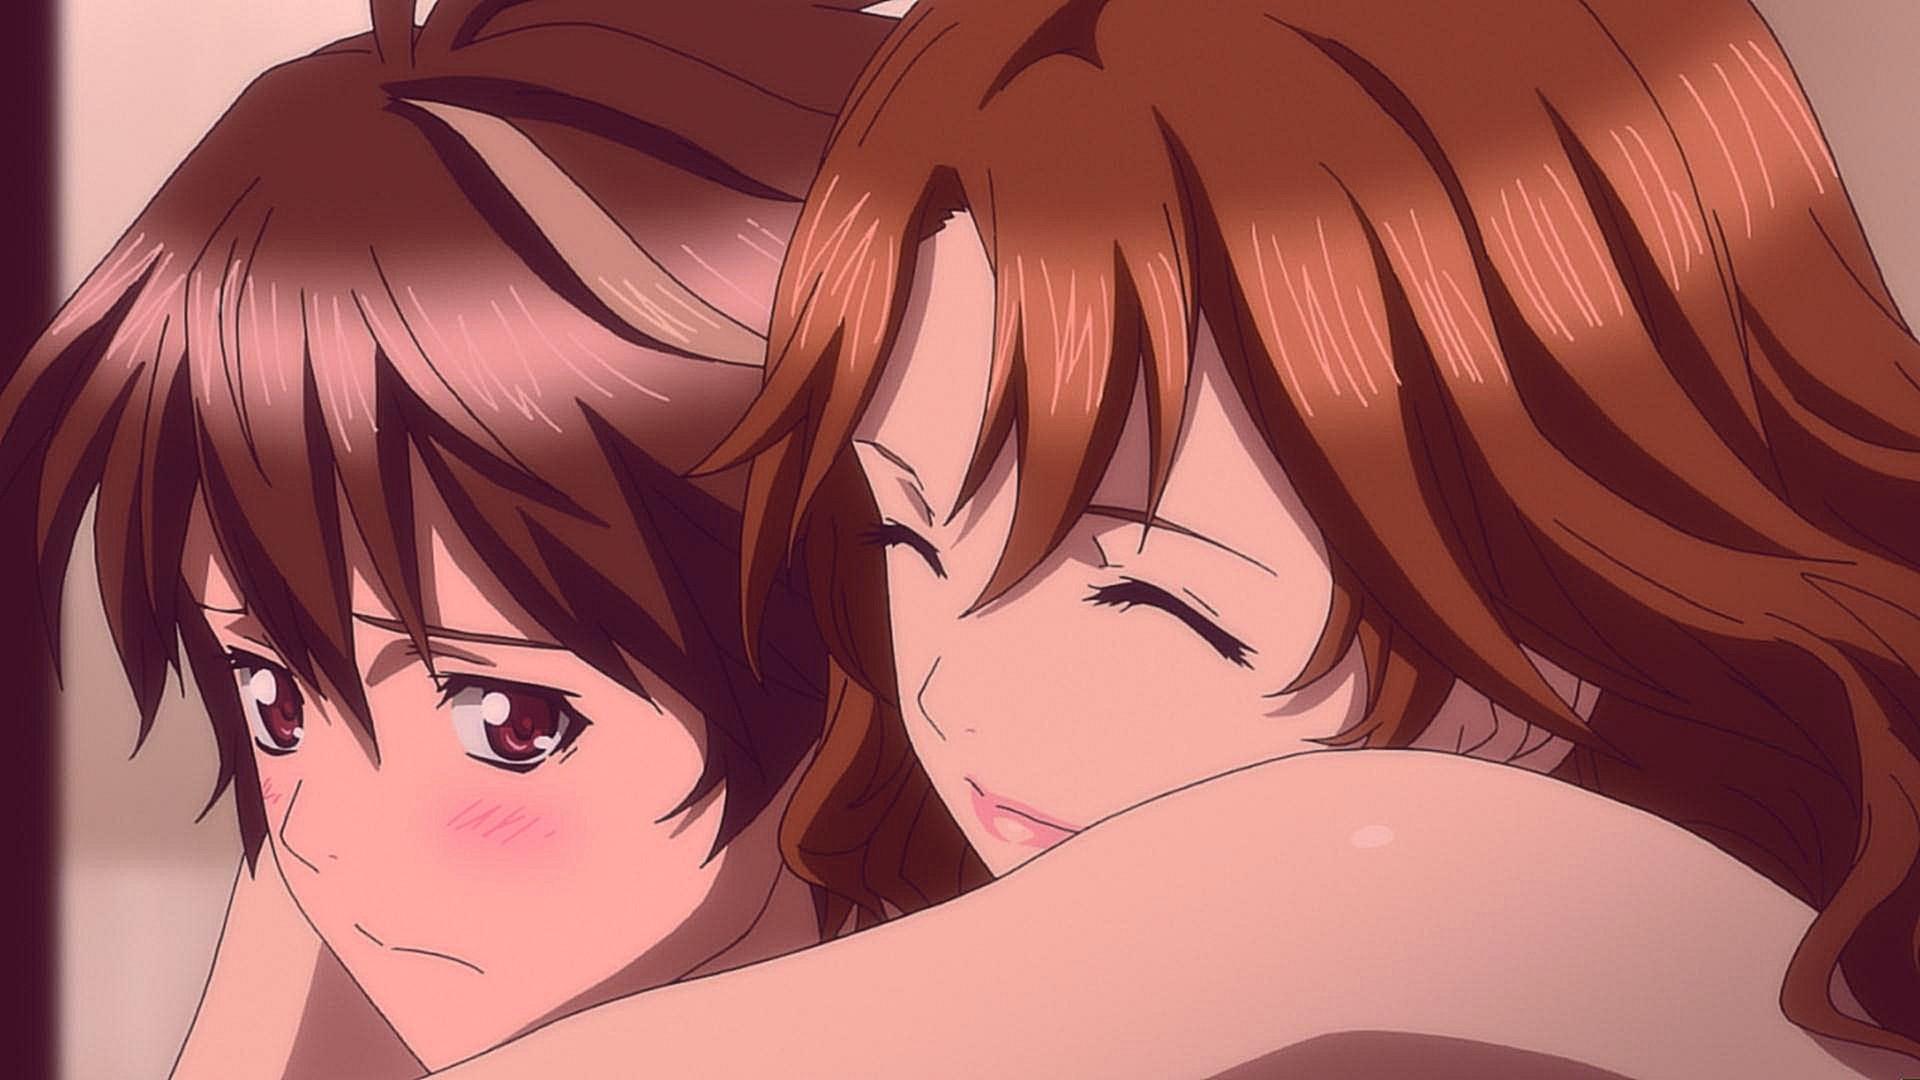 Anime Hug Wallpaper